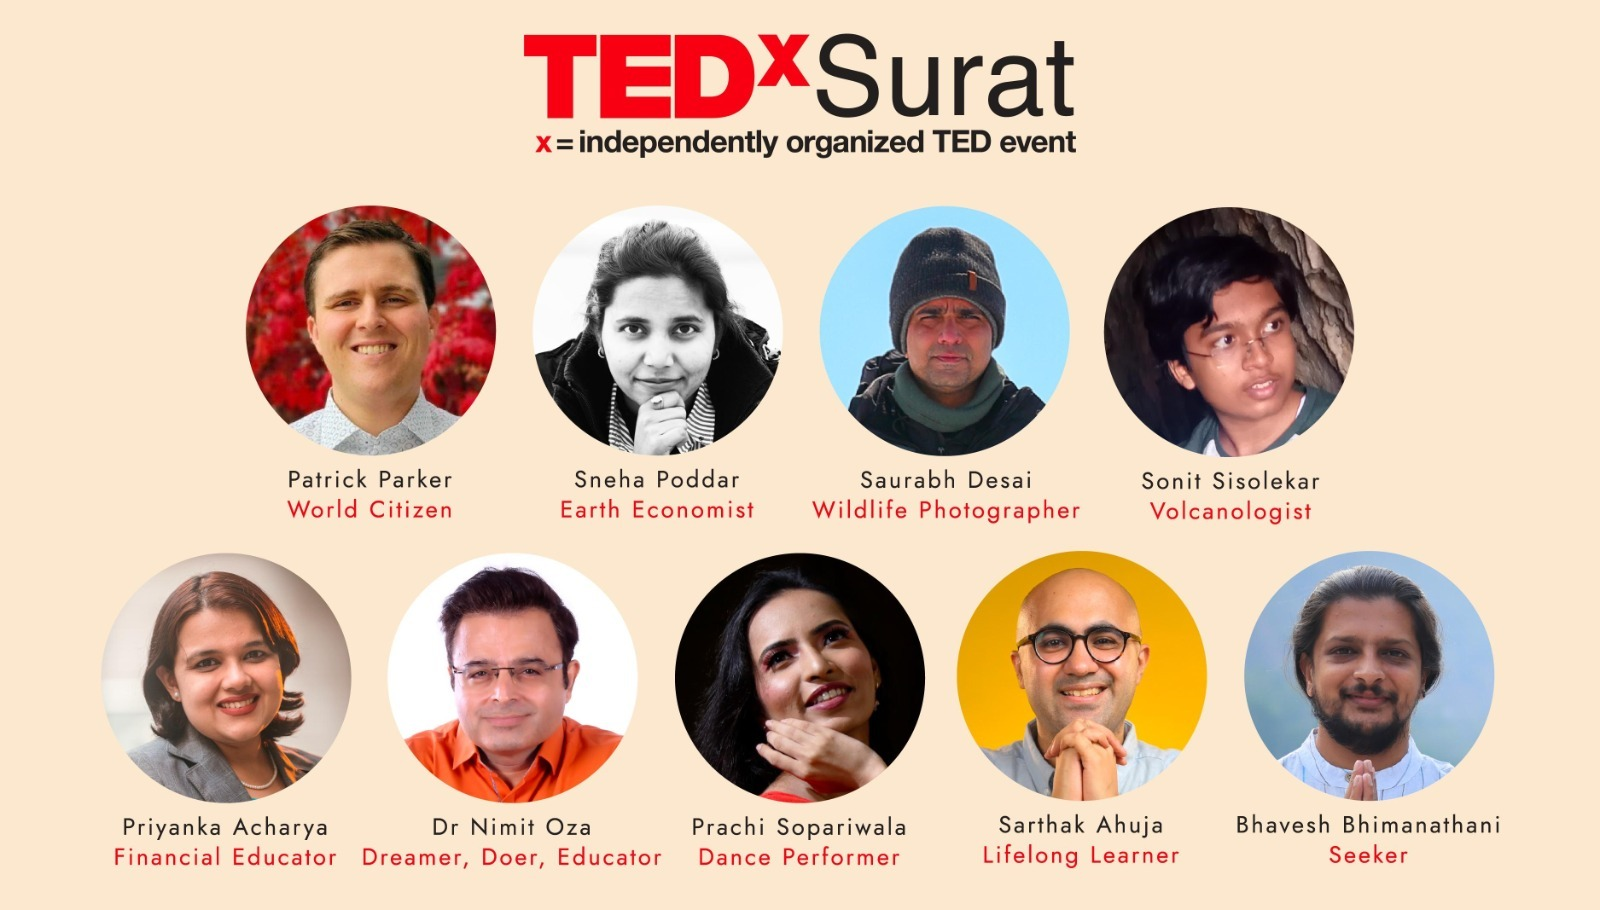 Ninth edition of TEDxSurat to take place at Sanjeev Kumar Auditorium on December 17